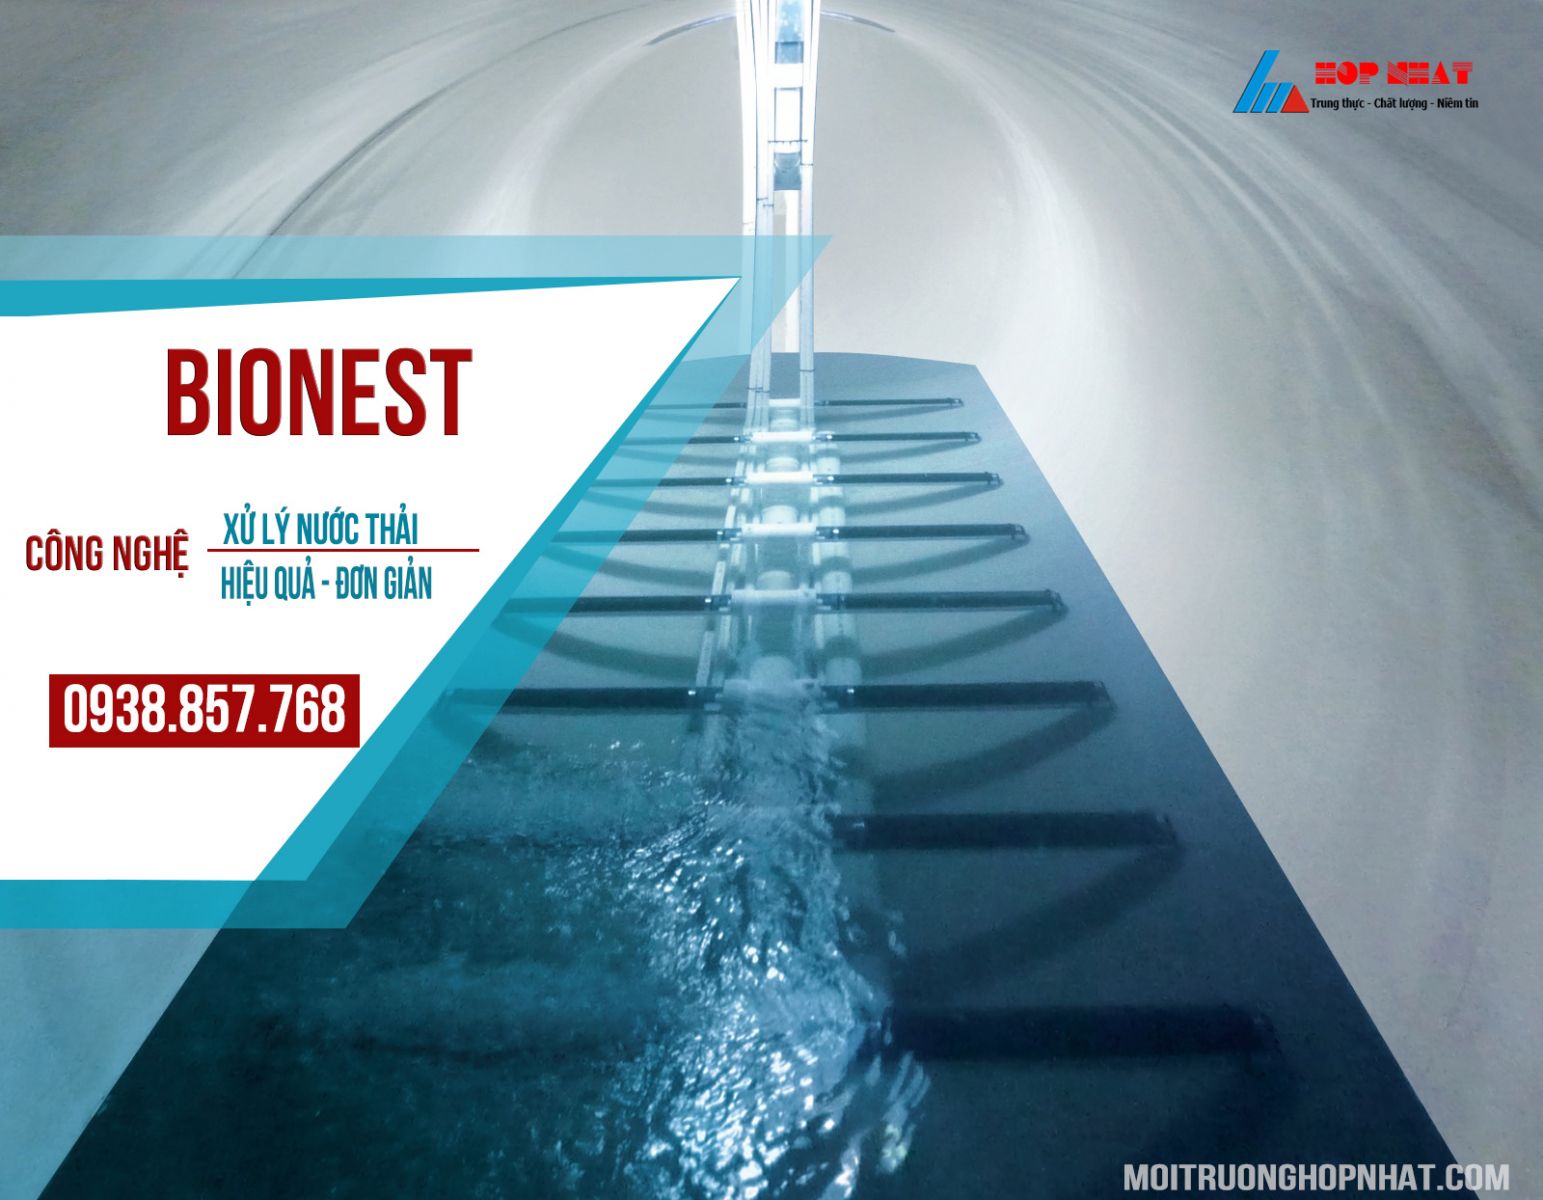 Bionest - Giải pháp để xử lý nguồn nước thải